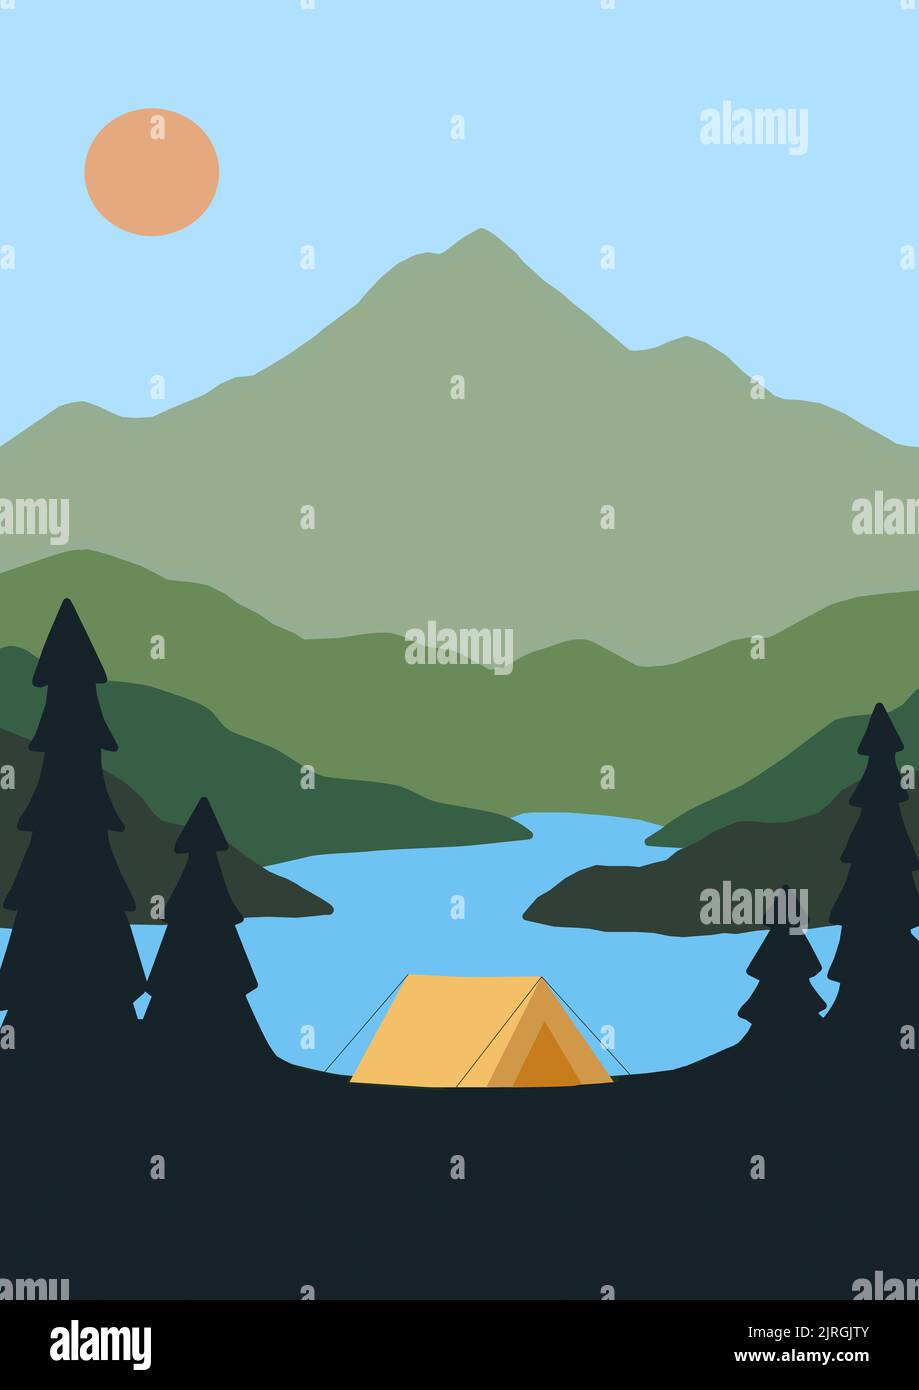 Camping in der Natur Landschaft - Stock Illustration Stockfoto